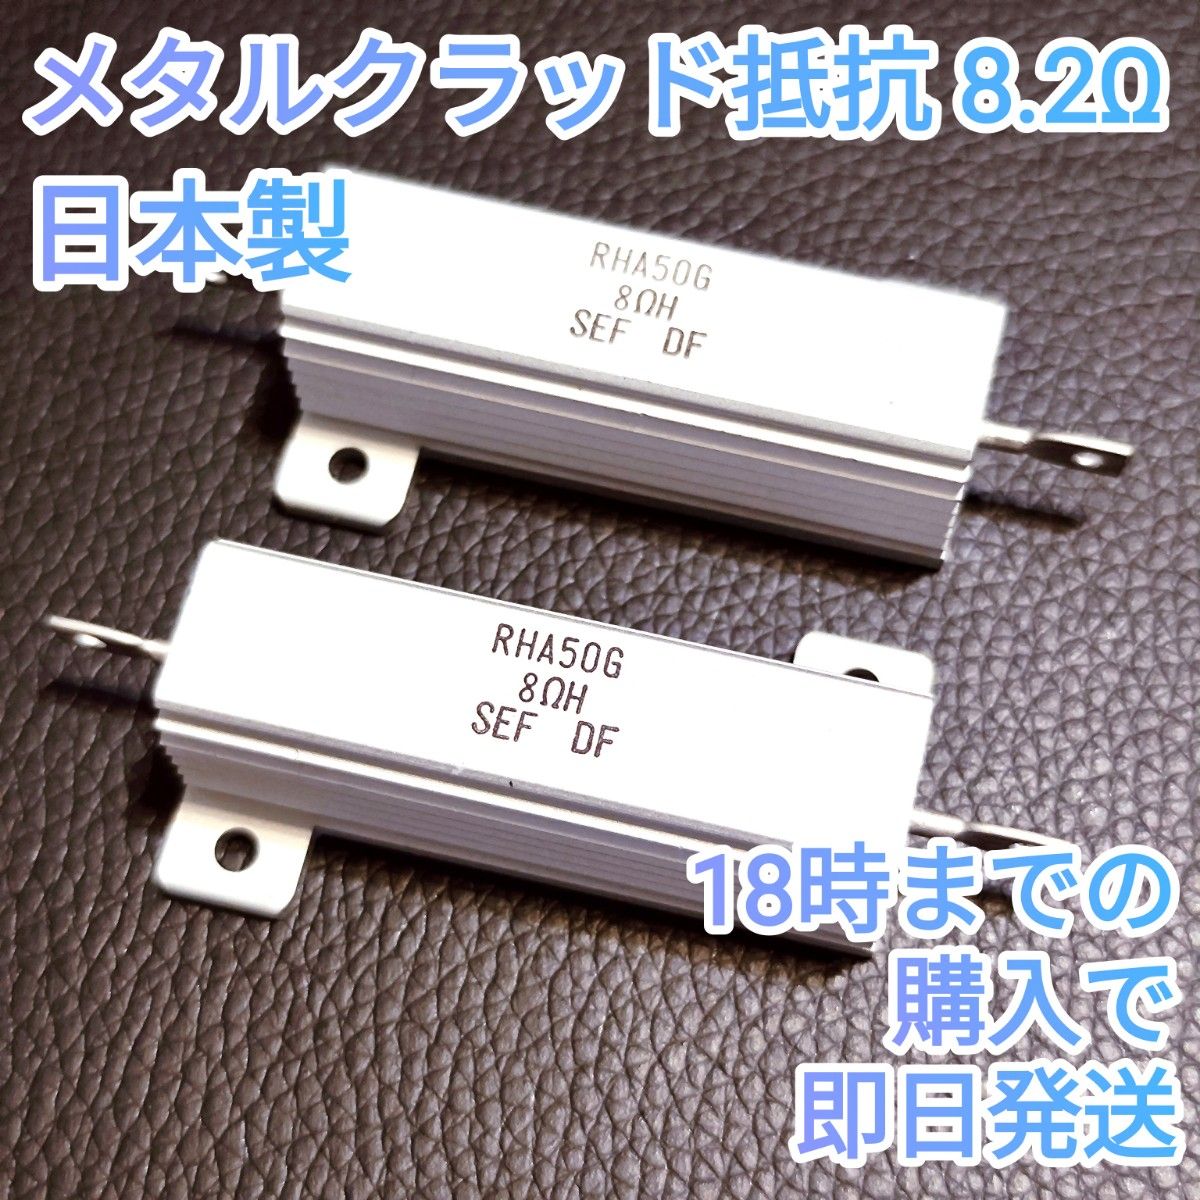 24時間内発送【新品未使用】日本製 メタルクラッド抵抗 RHA50G 8.2Ω